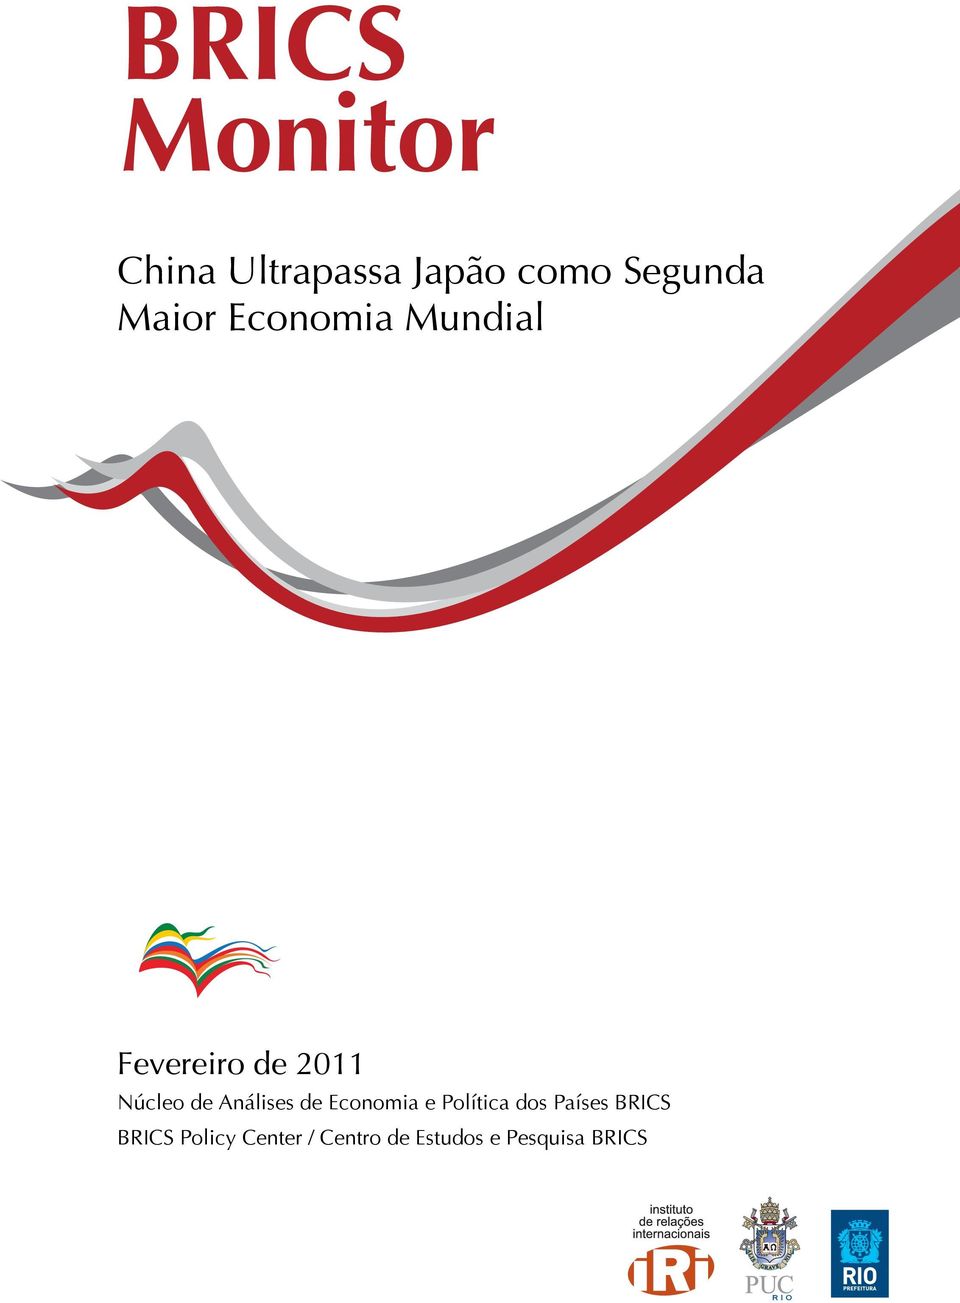 Análises de Economia e Política dos Países BRICS